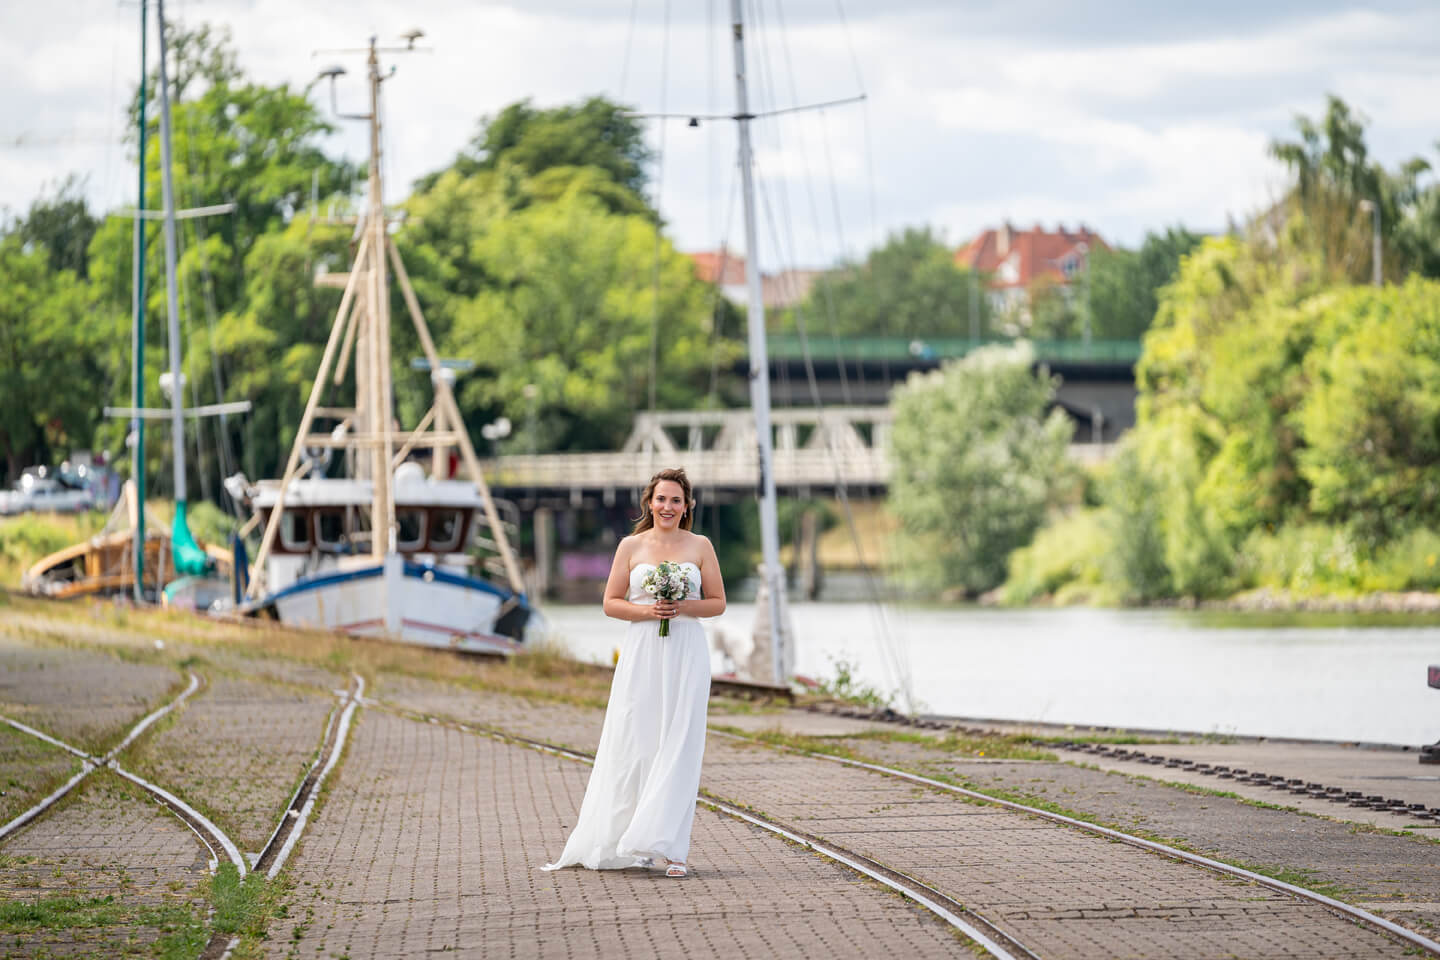 Hochzeitsfotos in Lübeck. Hier geht die Braut beim First Look auf den Bräutigam zu.